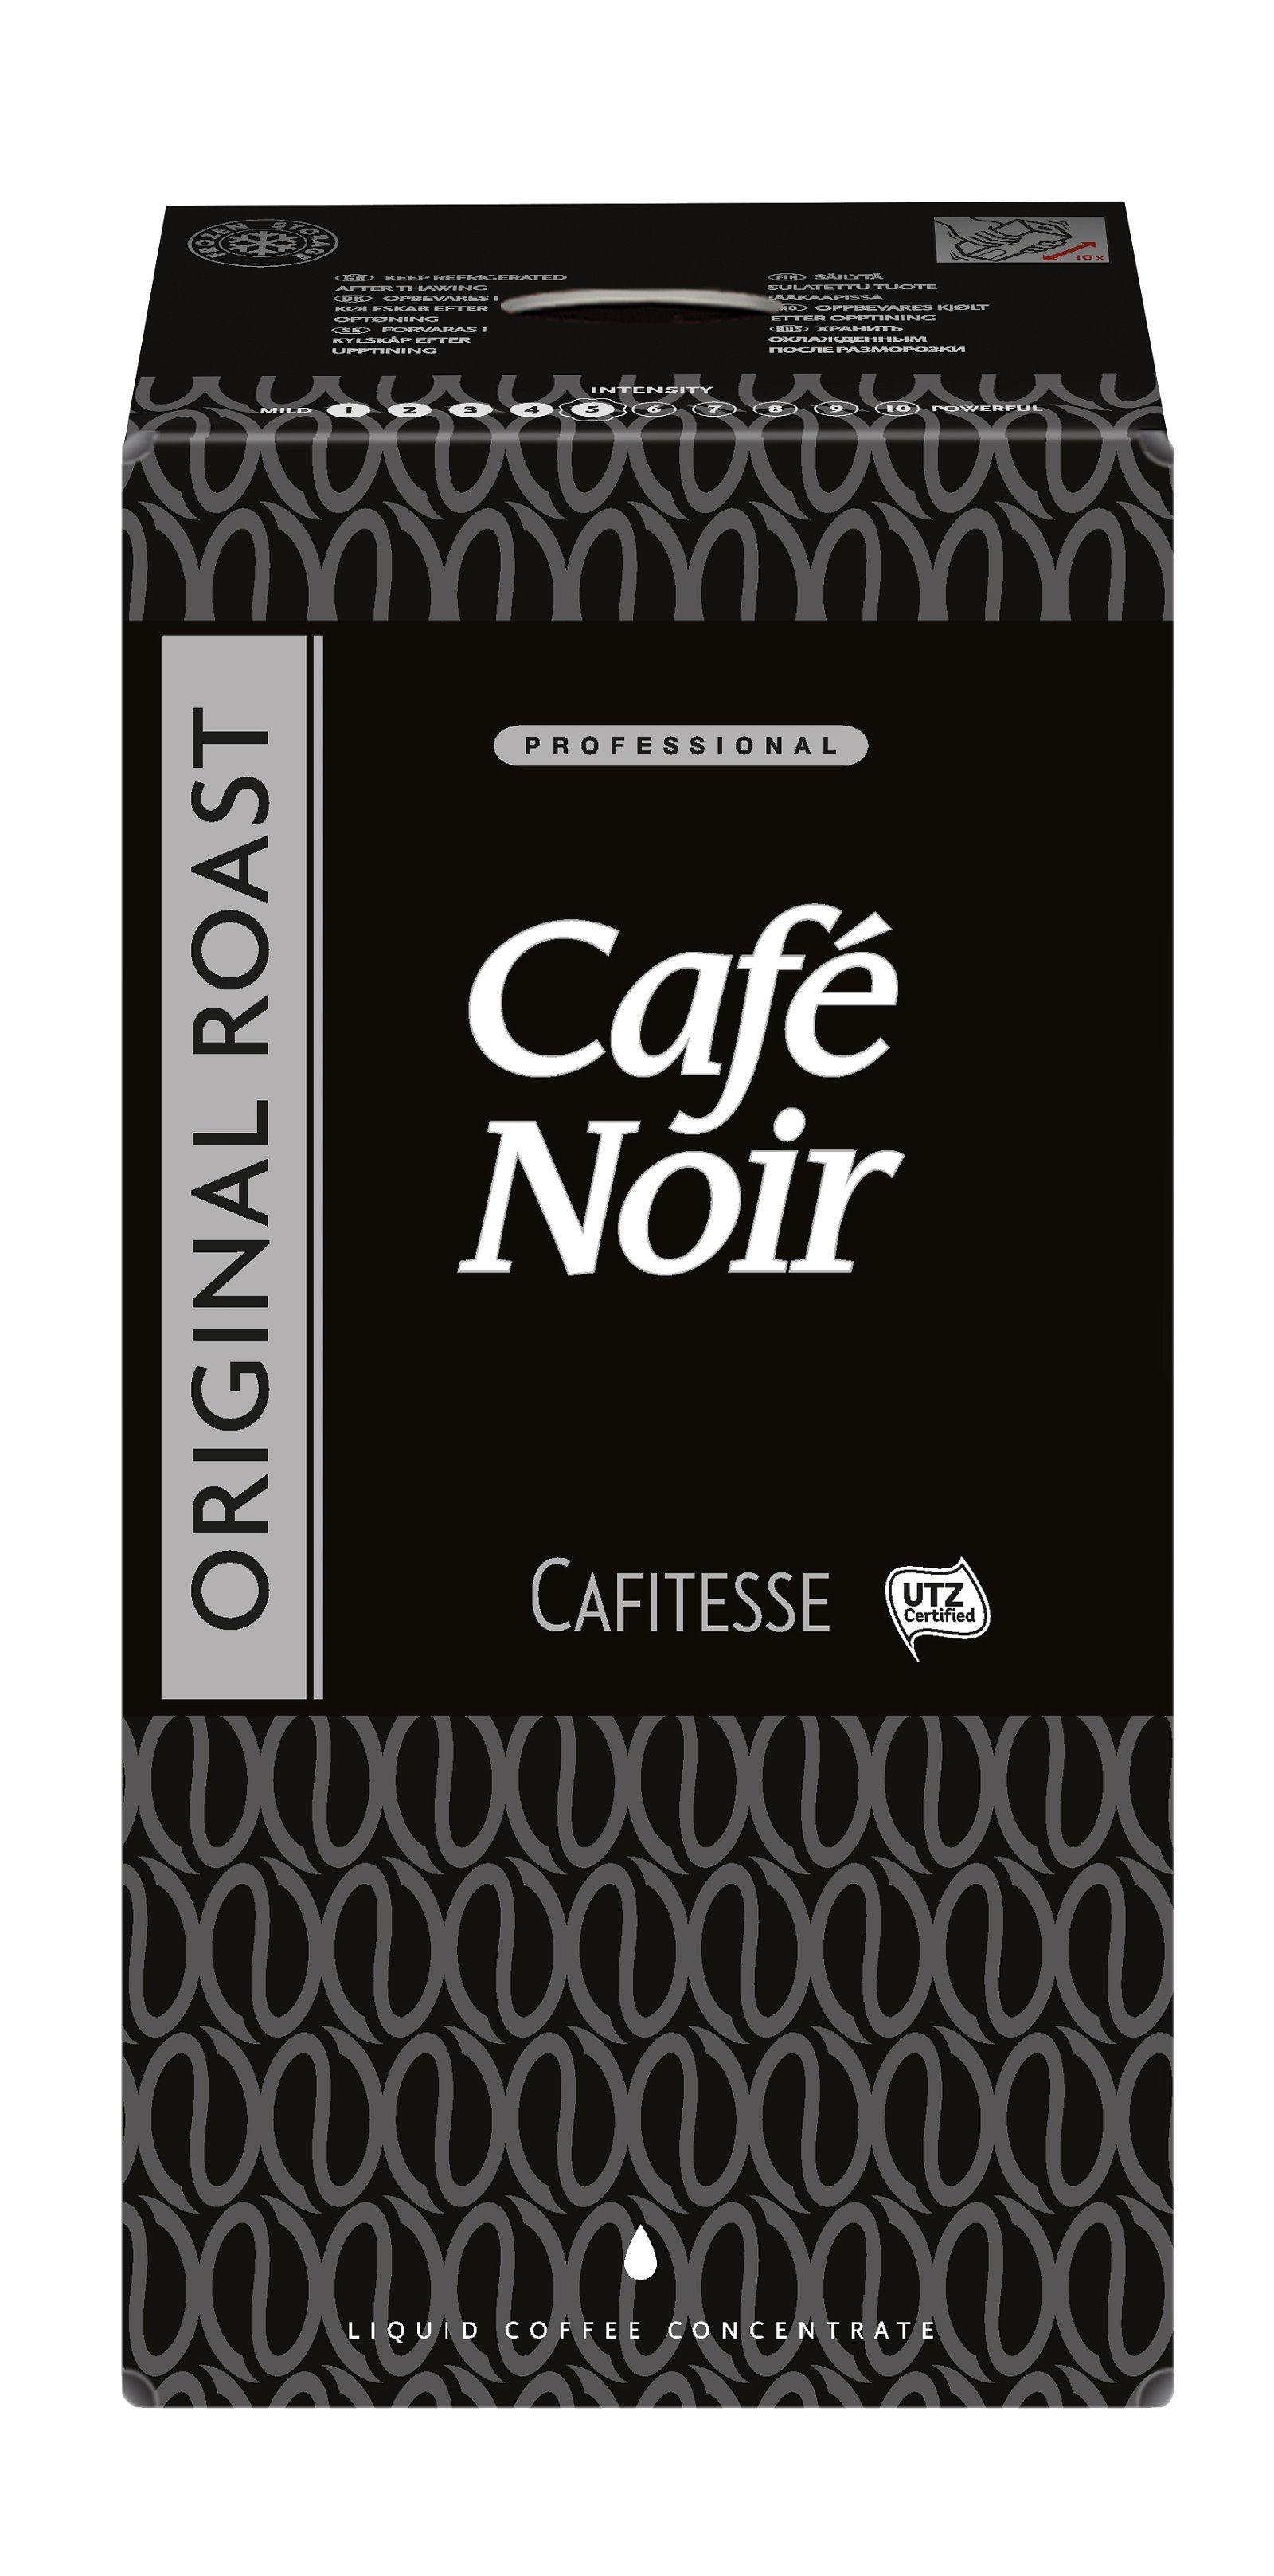 Café Noir Original Roast cafitesse kaffe 4 l Cafitesse